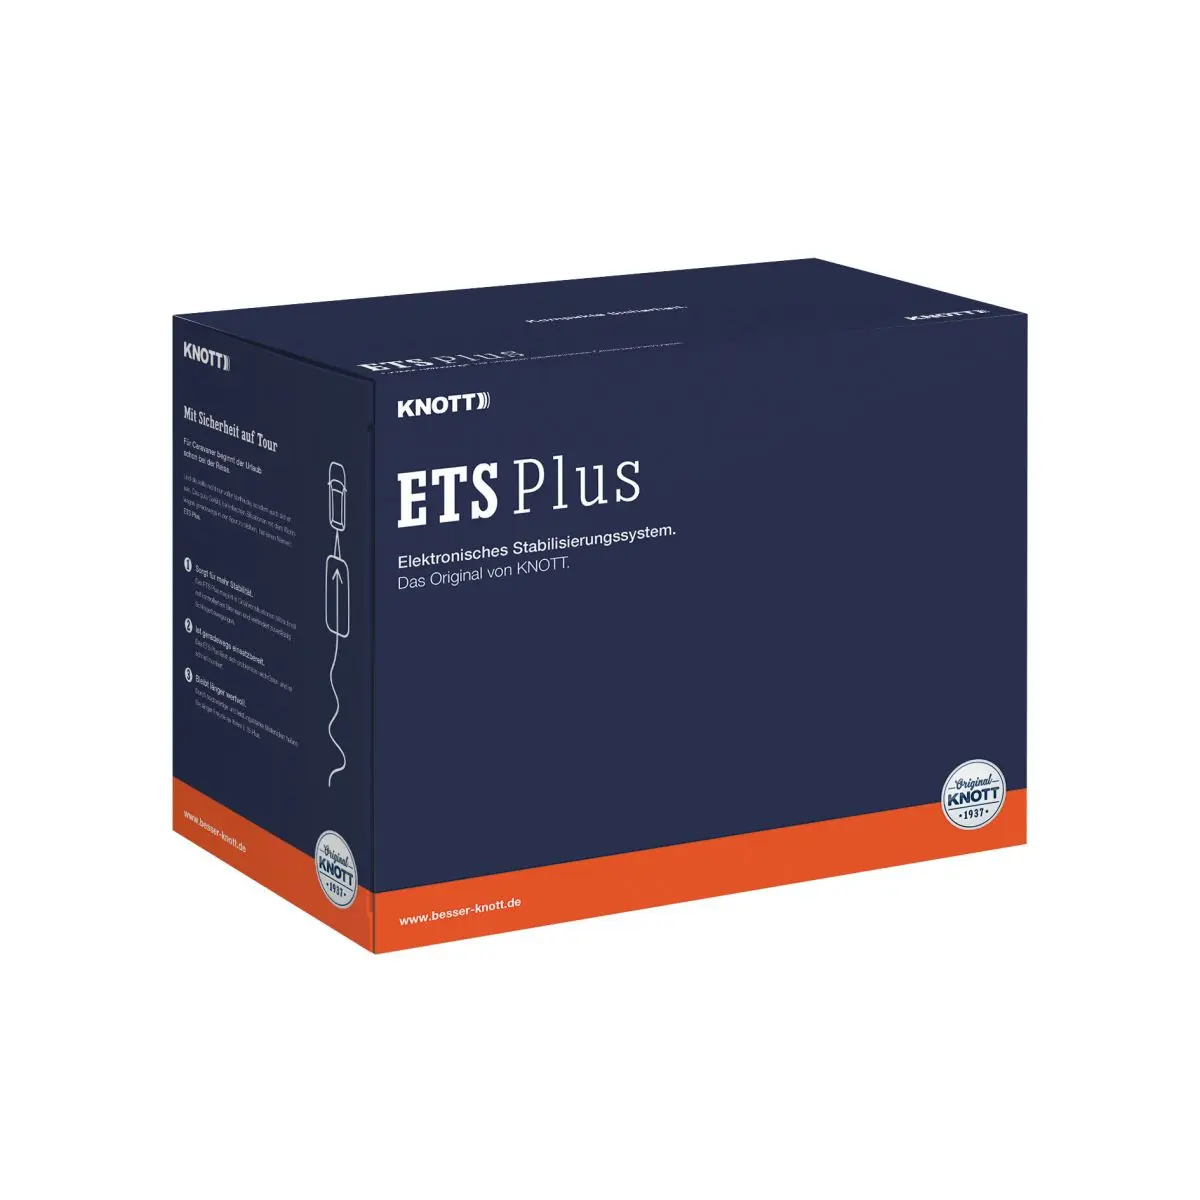 ETS Plus stabilizáló rendszer - tömeg 1601 - 2100 kg